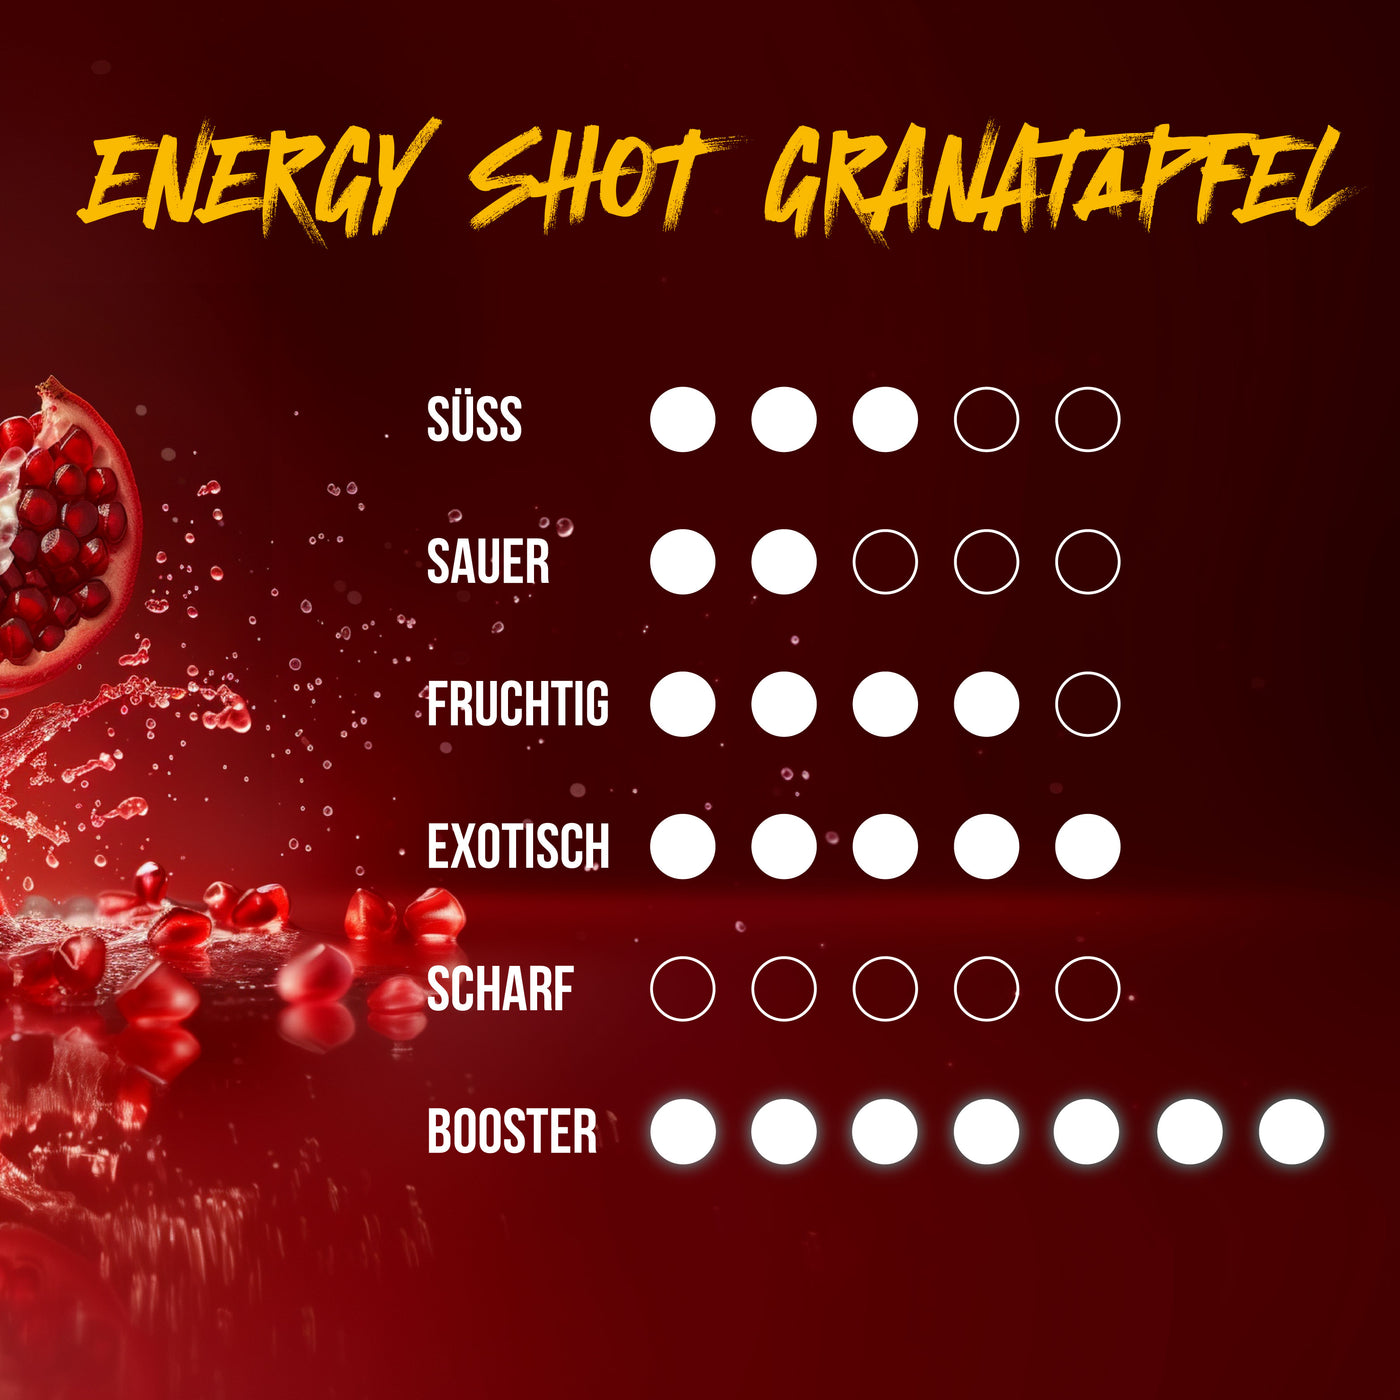 Energy Shot - Pomegranate